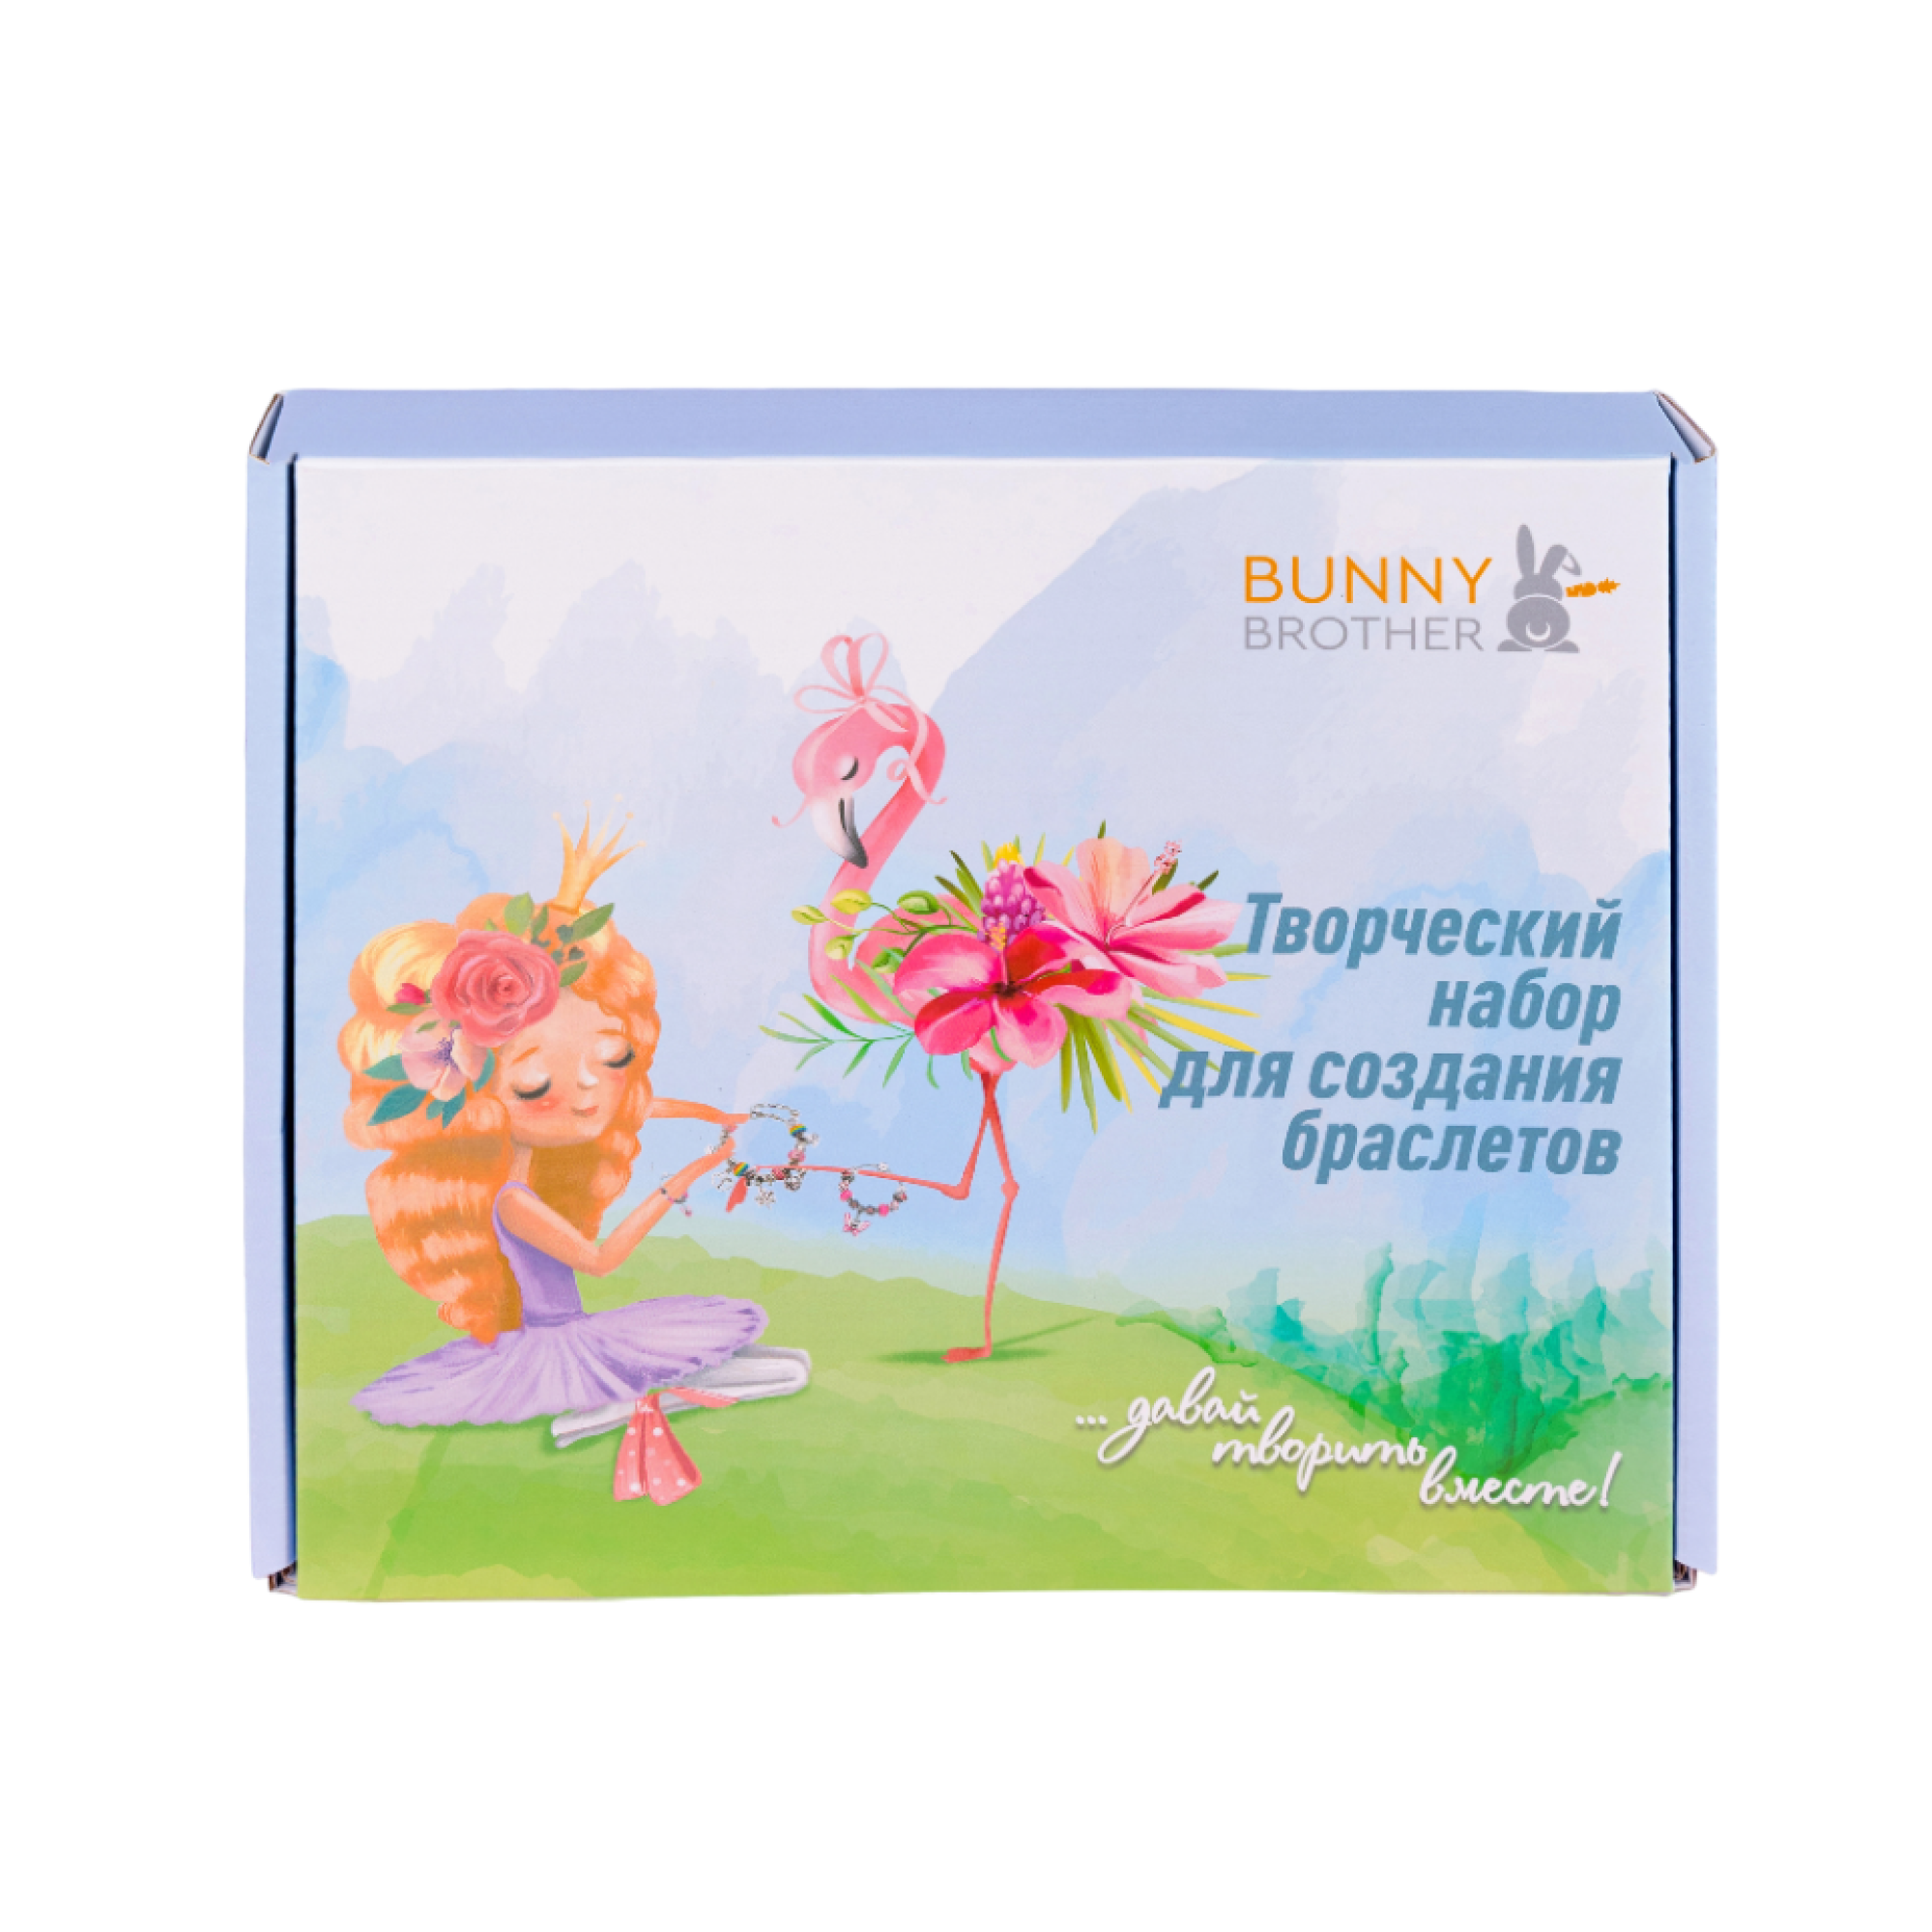 Набор для создания бижутерии BUNNY BROTHER Цветной с фламинго - фото 15